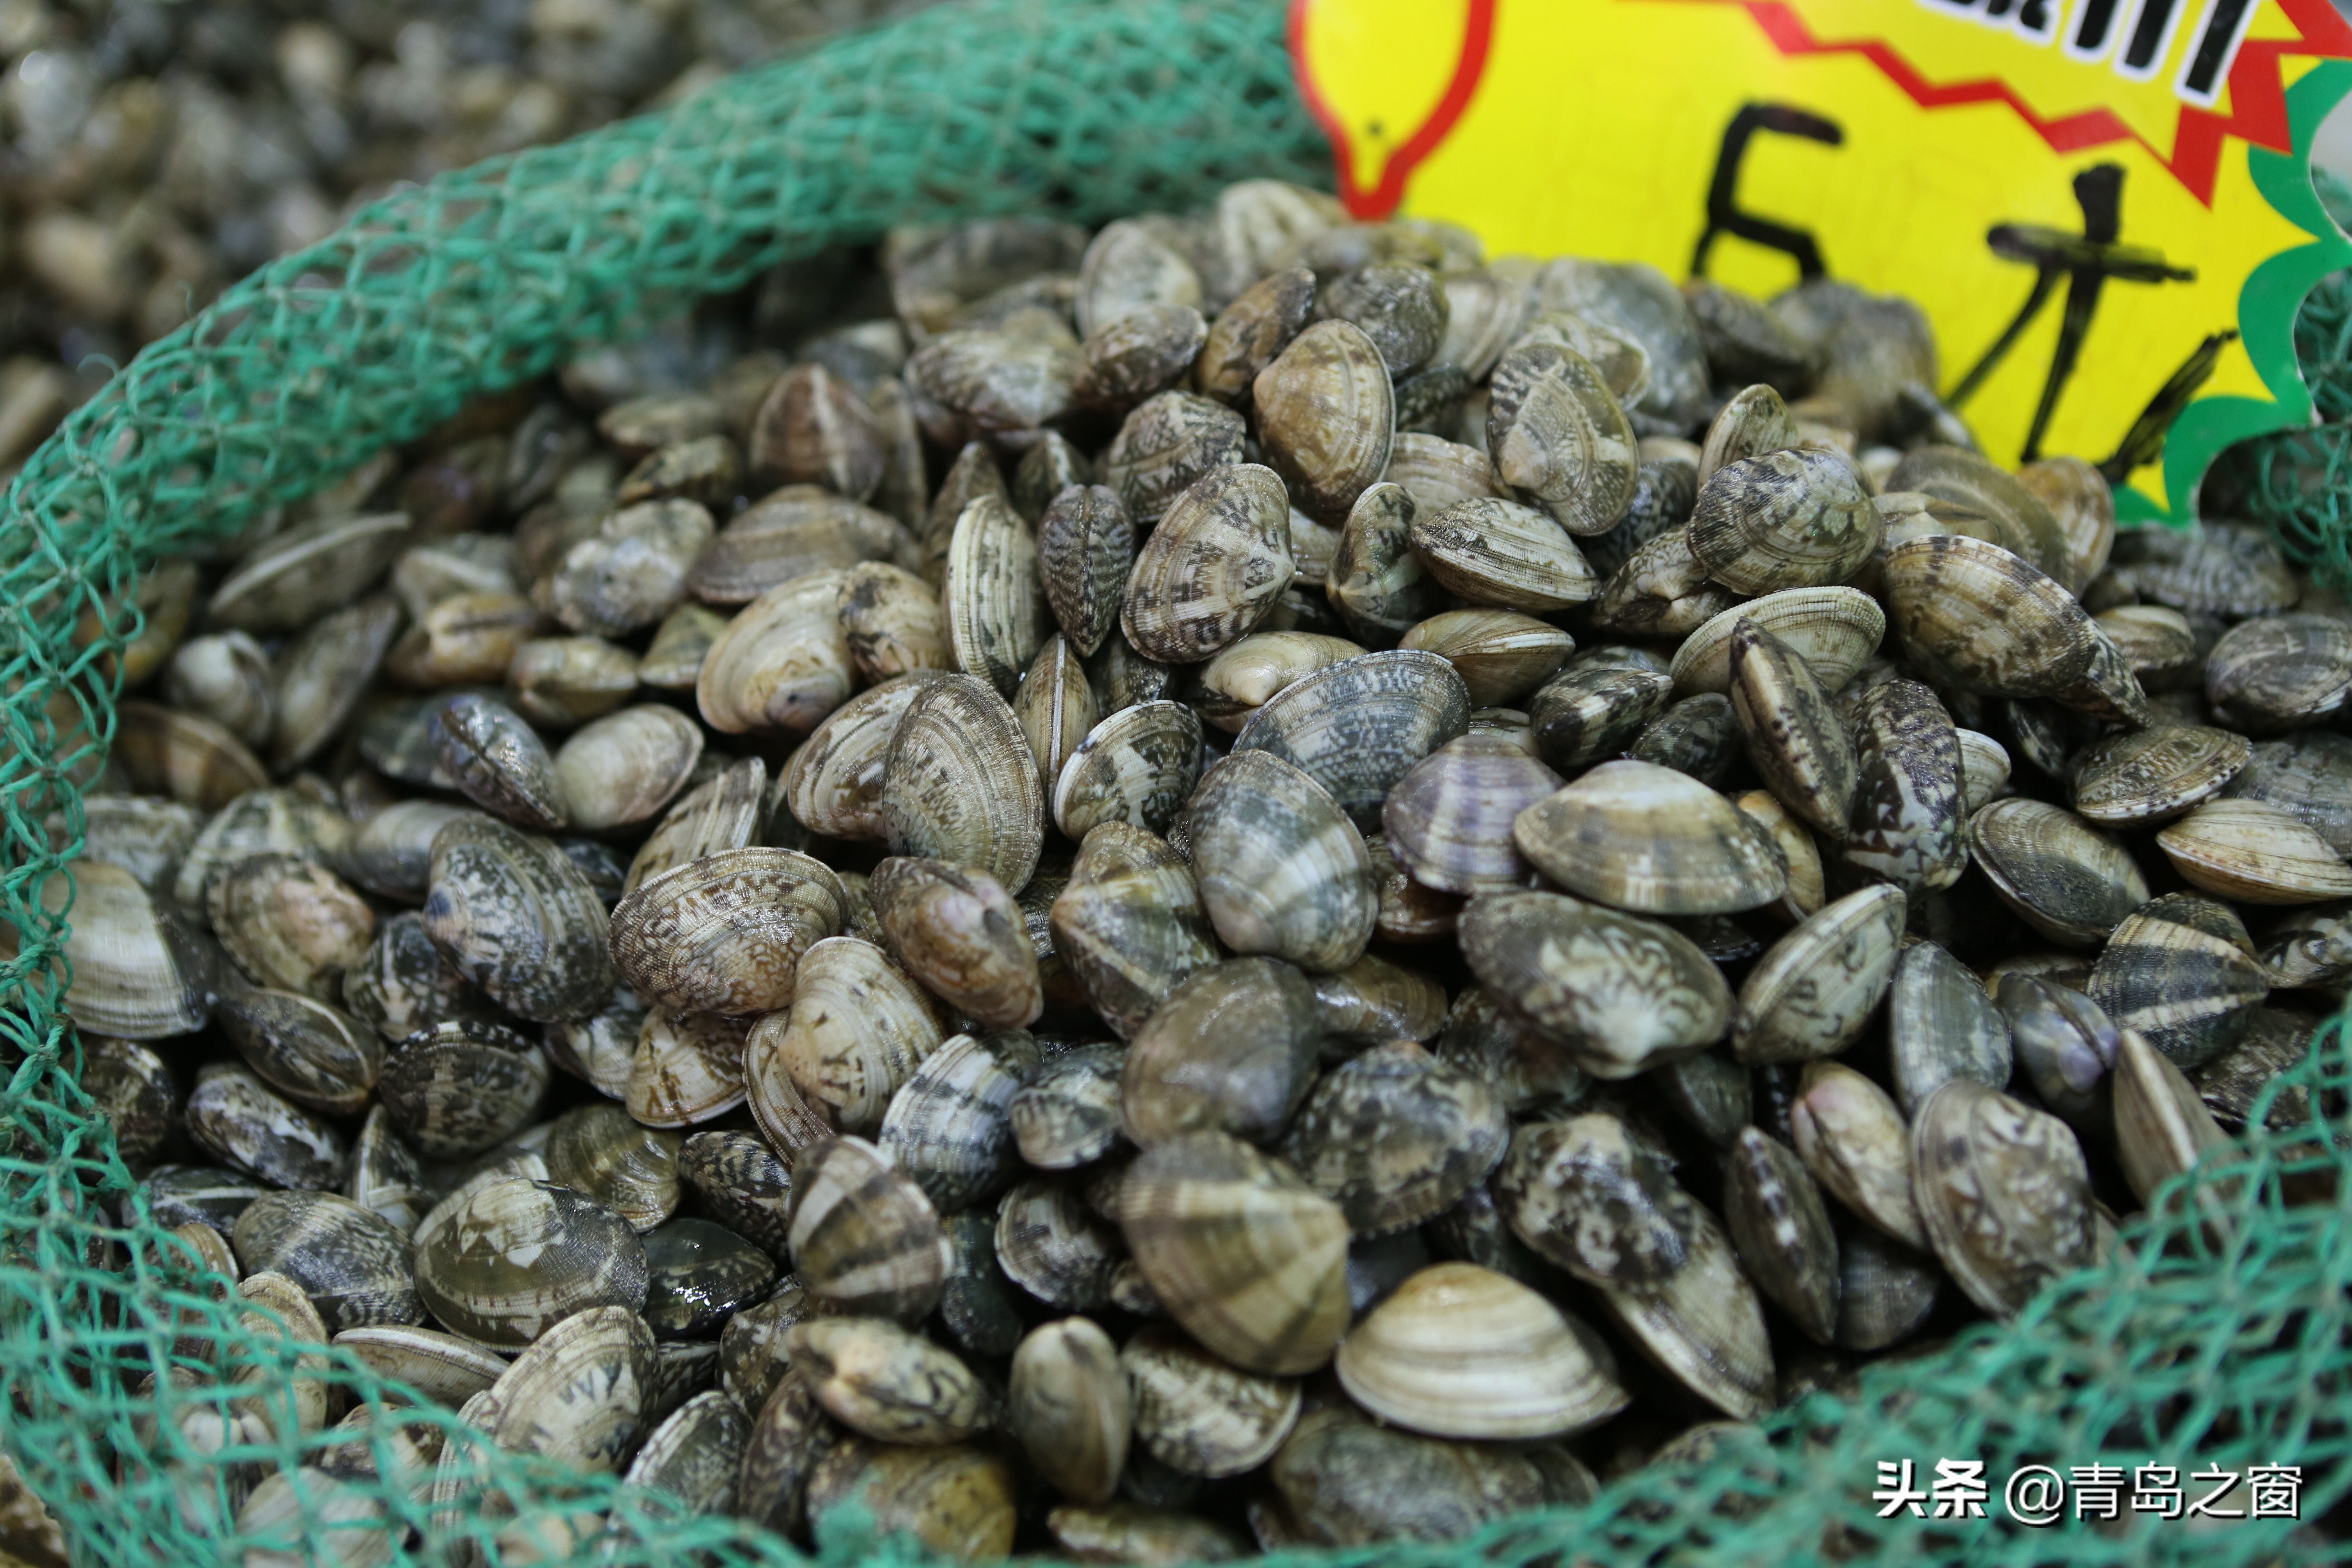 蛏子跌至15元一斤 蛤蜊也降价了 扇贝、海蛎子价格依然坚挺